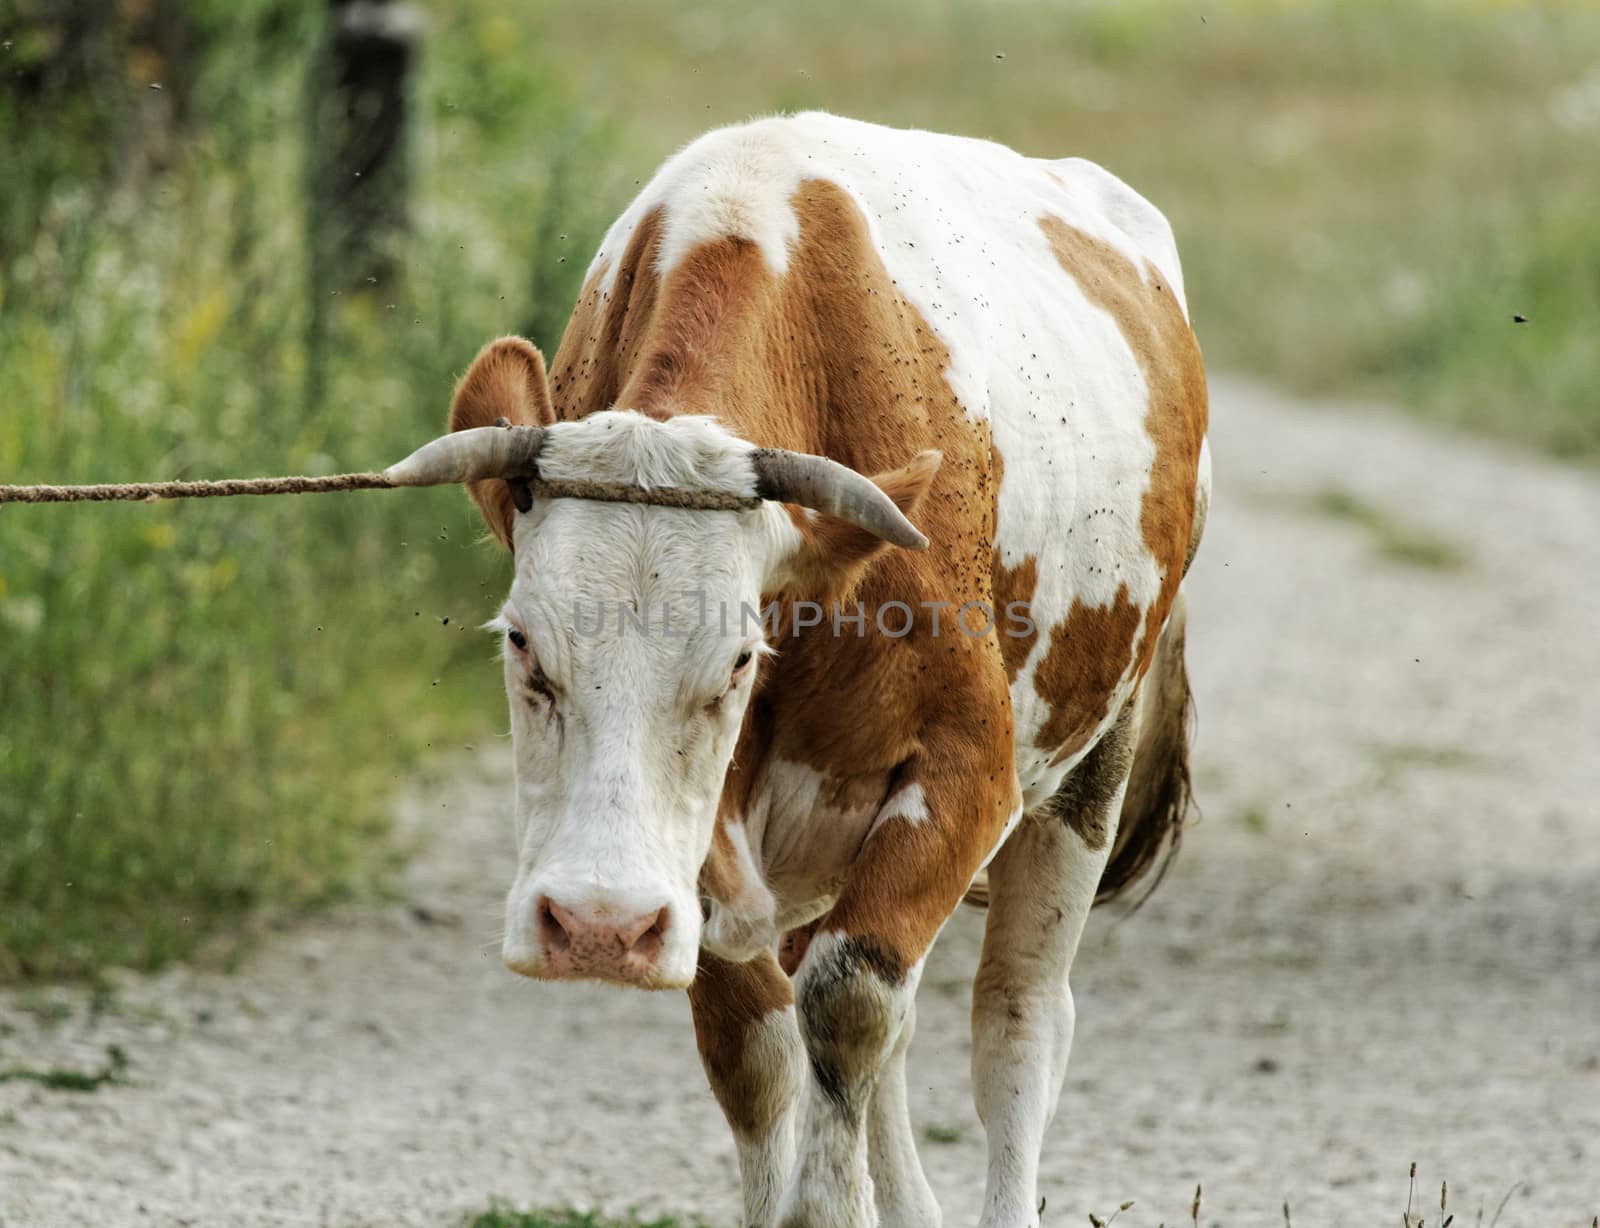 motley cow graze in a field (free range)